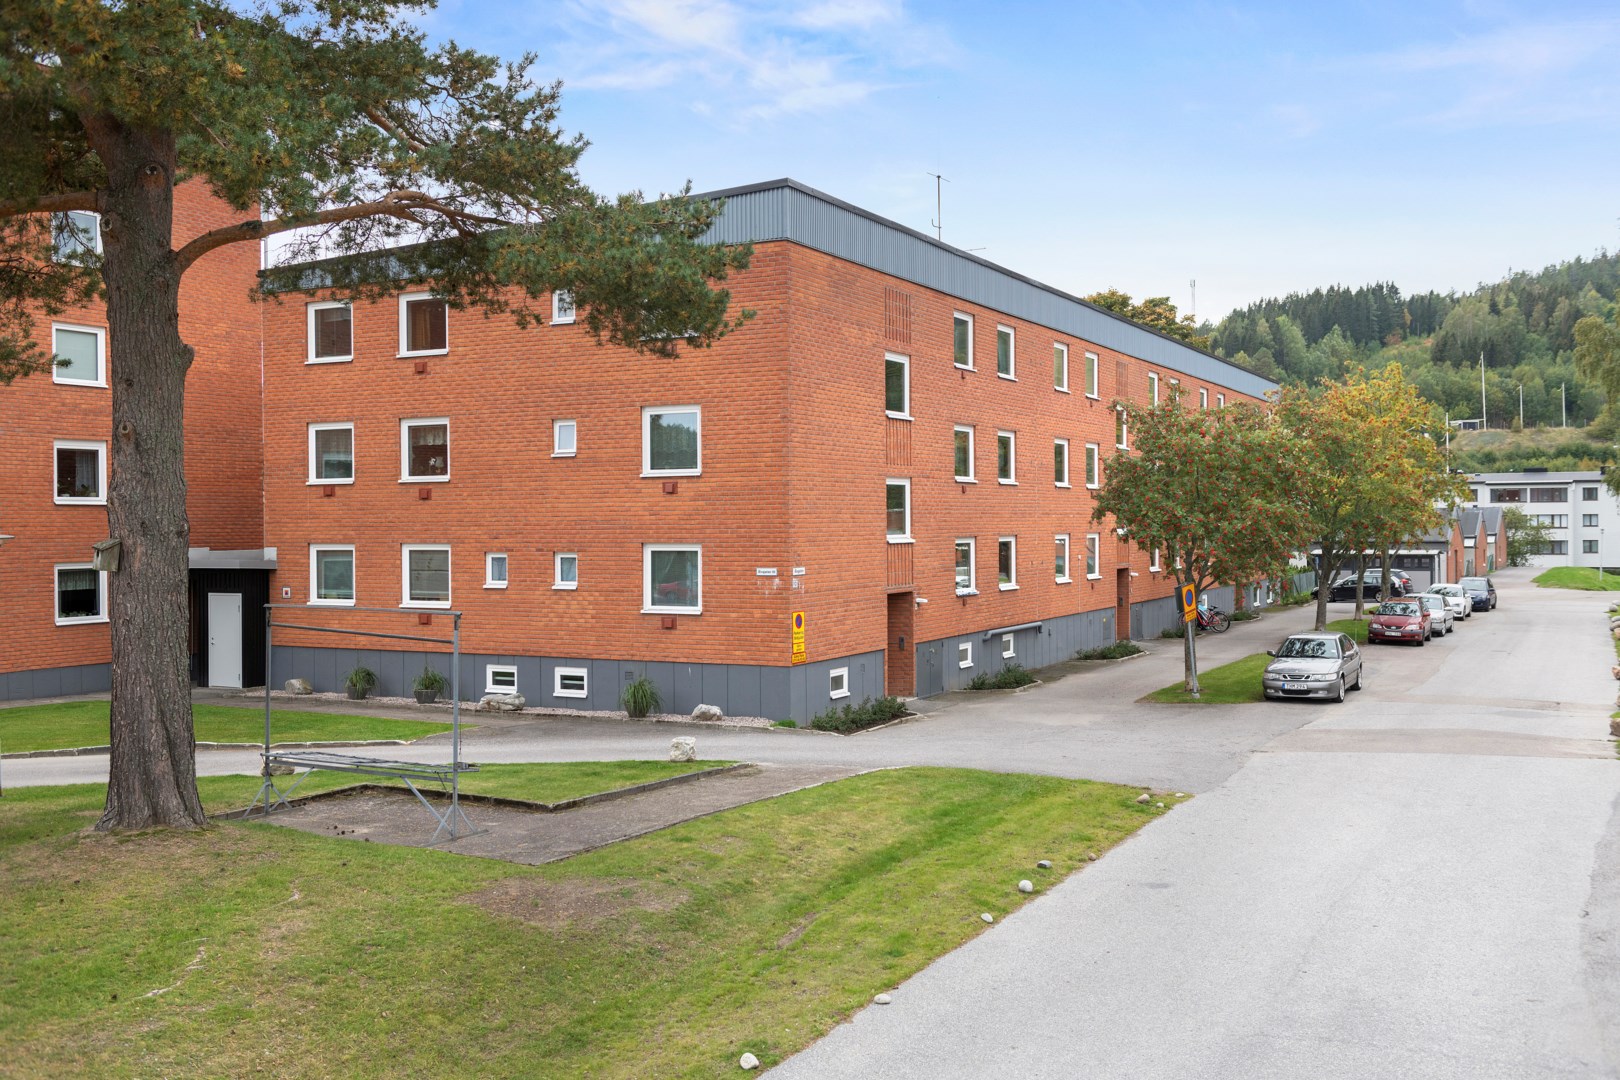 Bostadsrätt i Kvissleby, Sverige, Älvgatan 10A